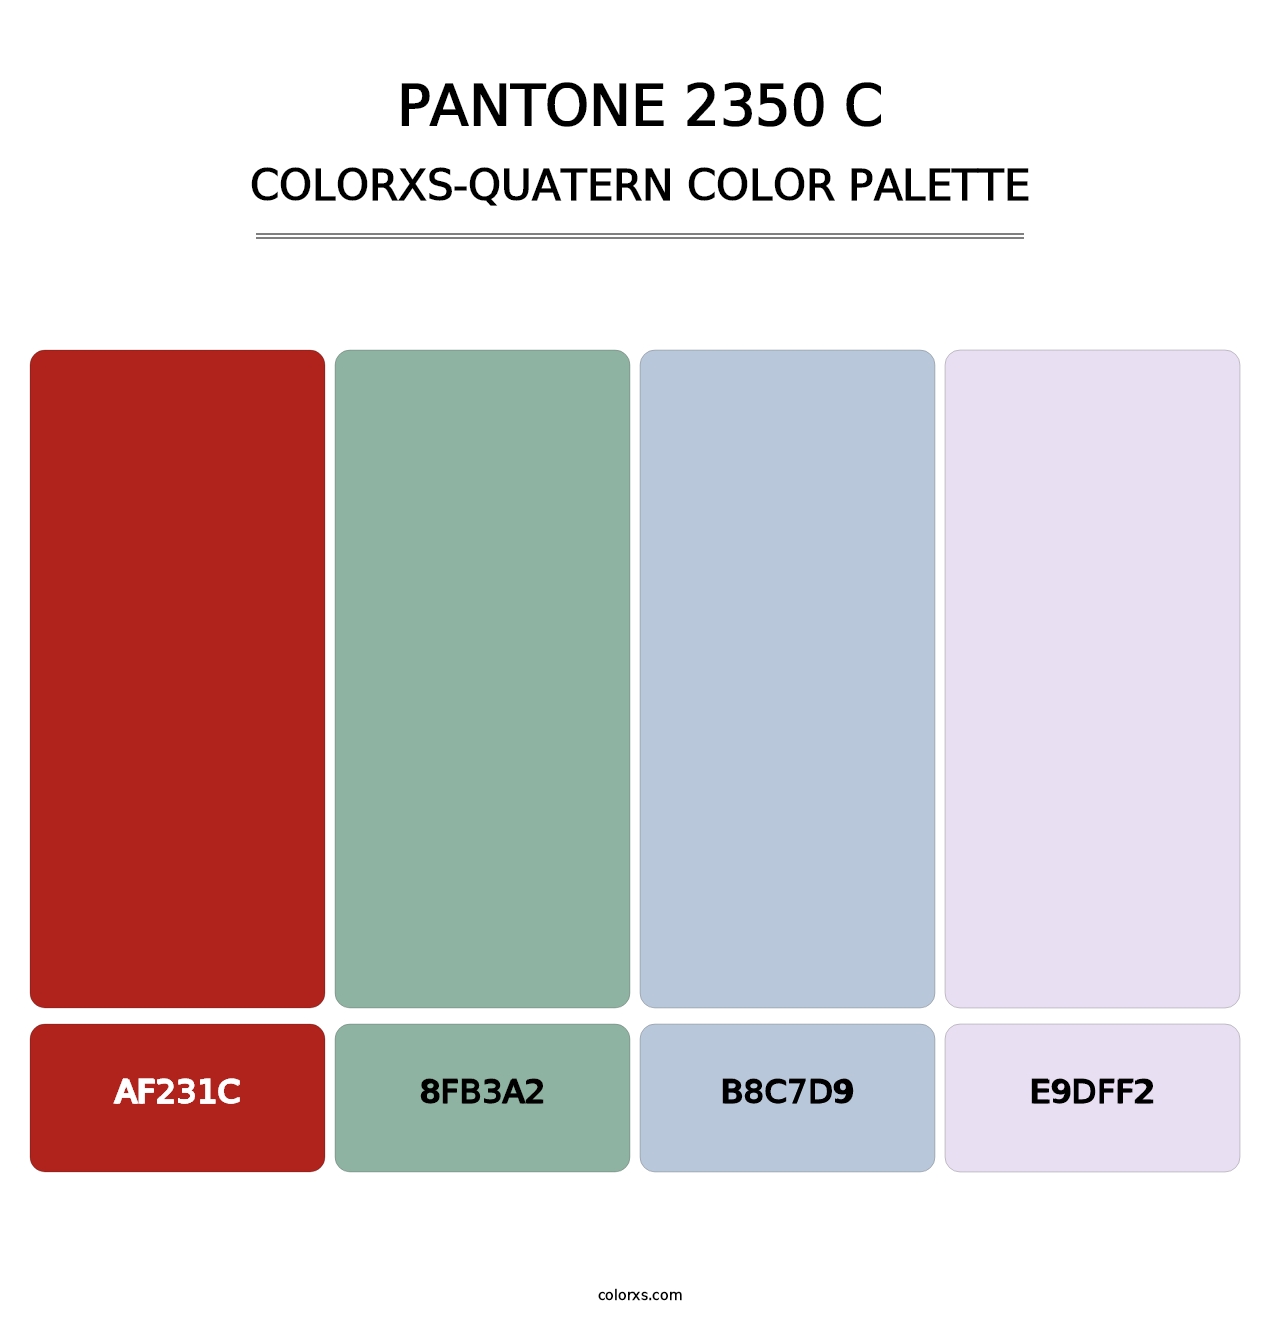 PANTONE 2350 C - Colorxs Quatern Palette